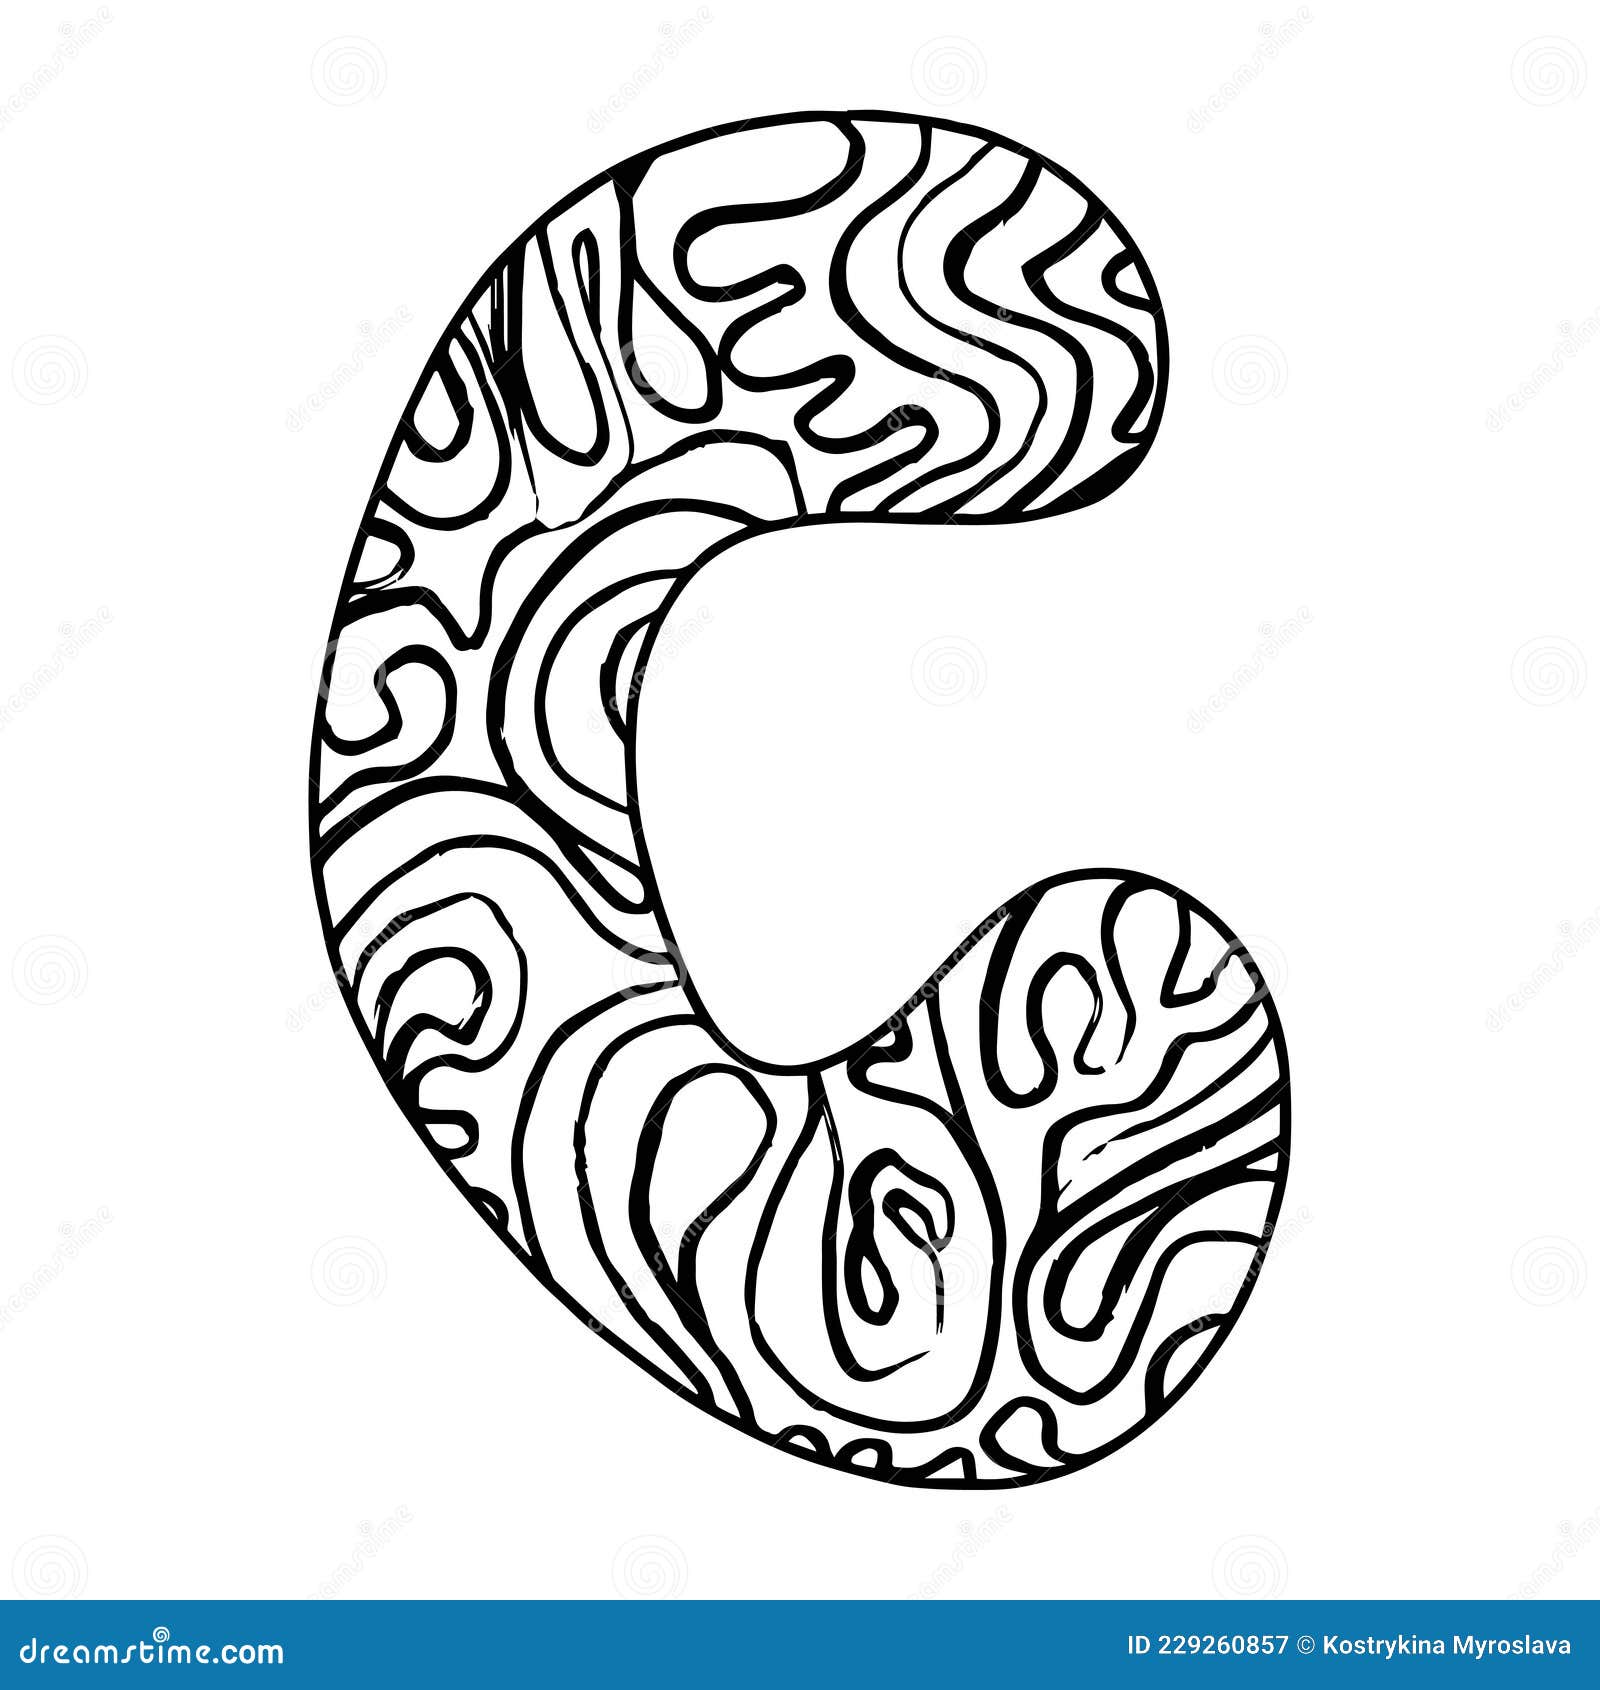 Zentangle stylized alphabet